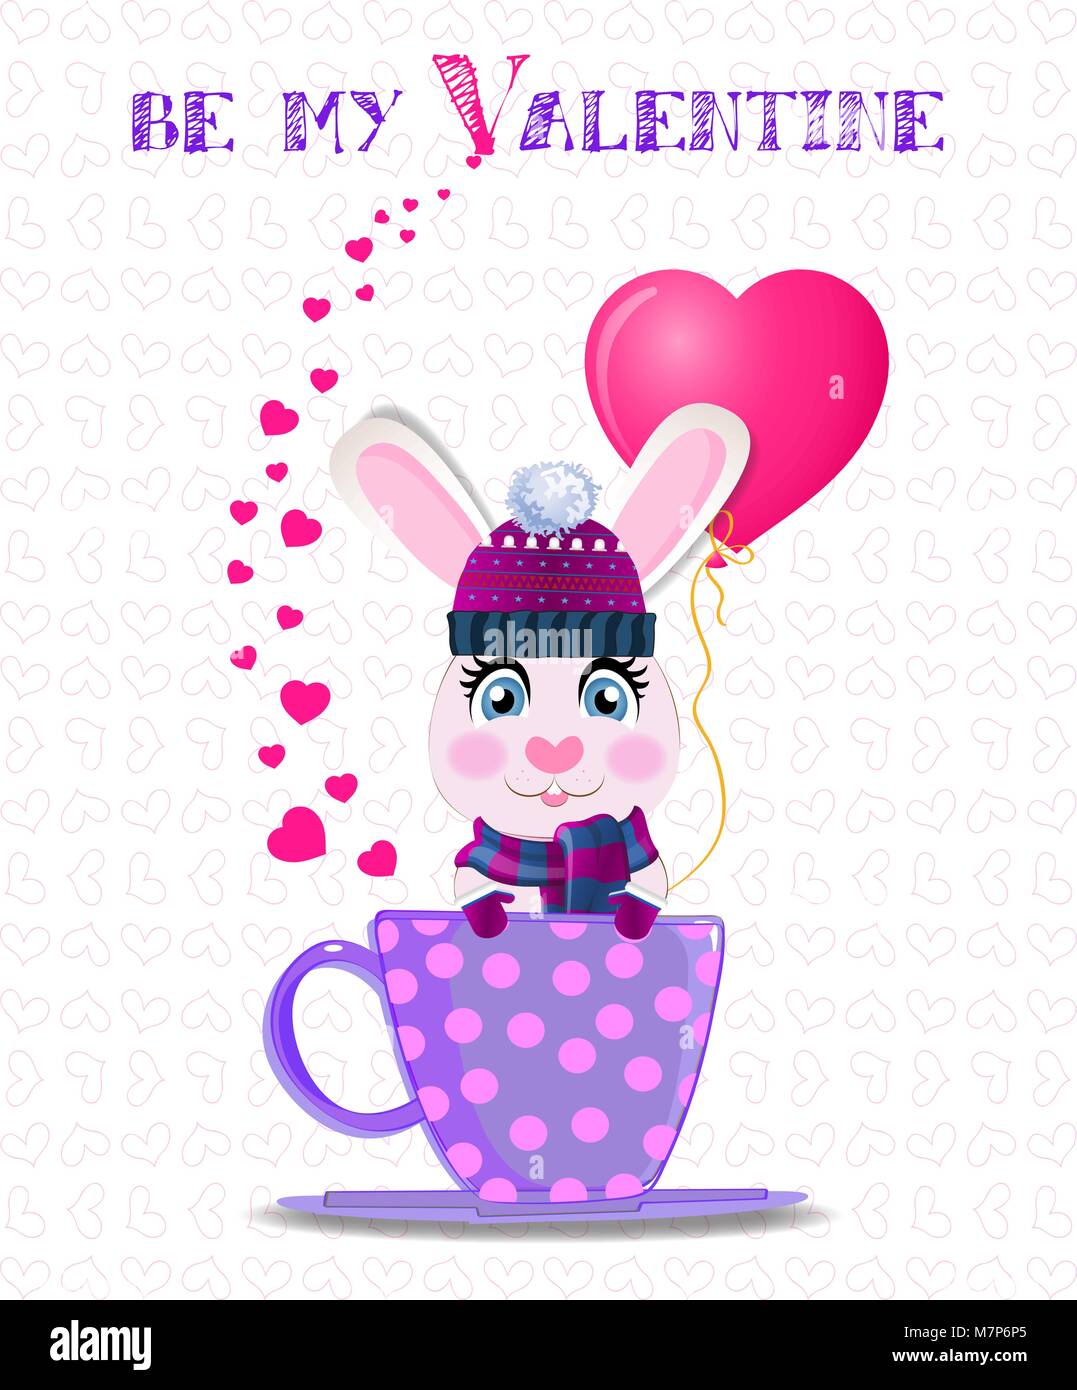 Be My Valentine card avec cute cartoon lapin en violet bonnet, écharpe en tricot et mitaines holding ballon coeur rose lilas, assis dans la tasse avec polka dot Illustration de Vecteur